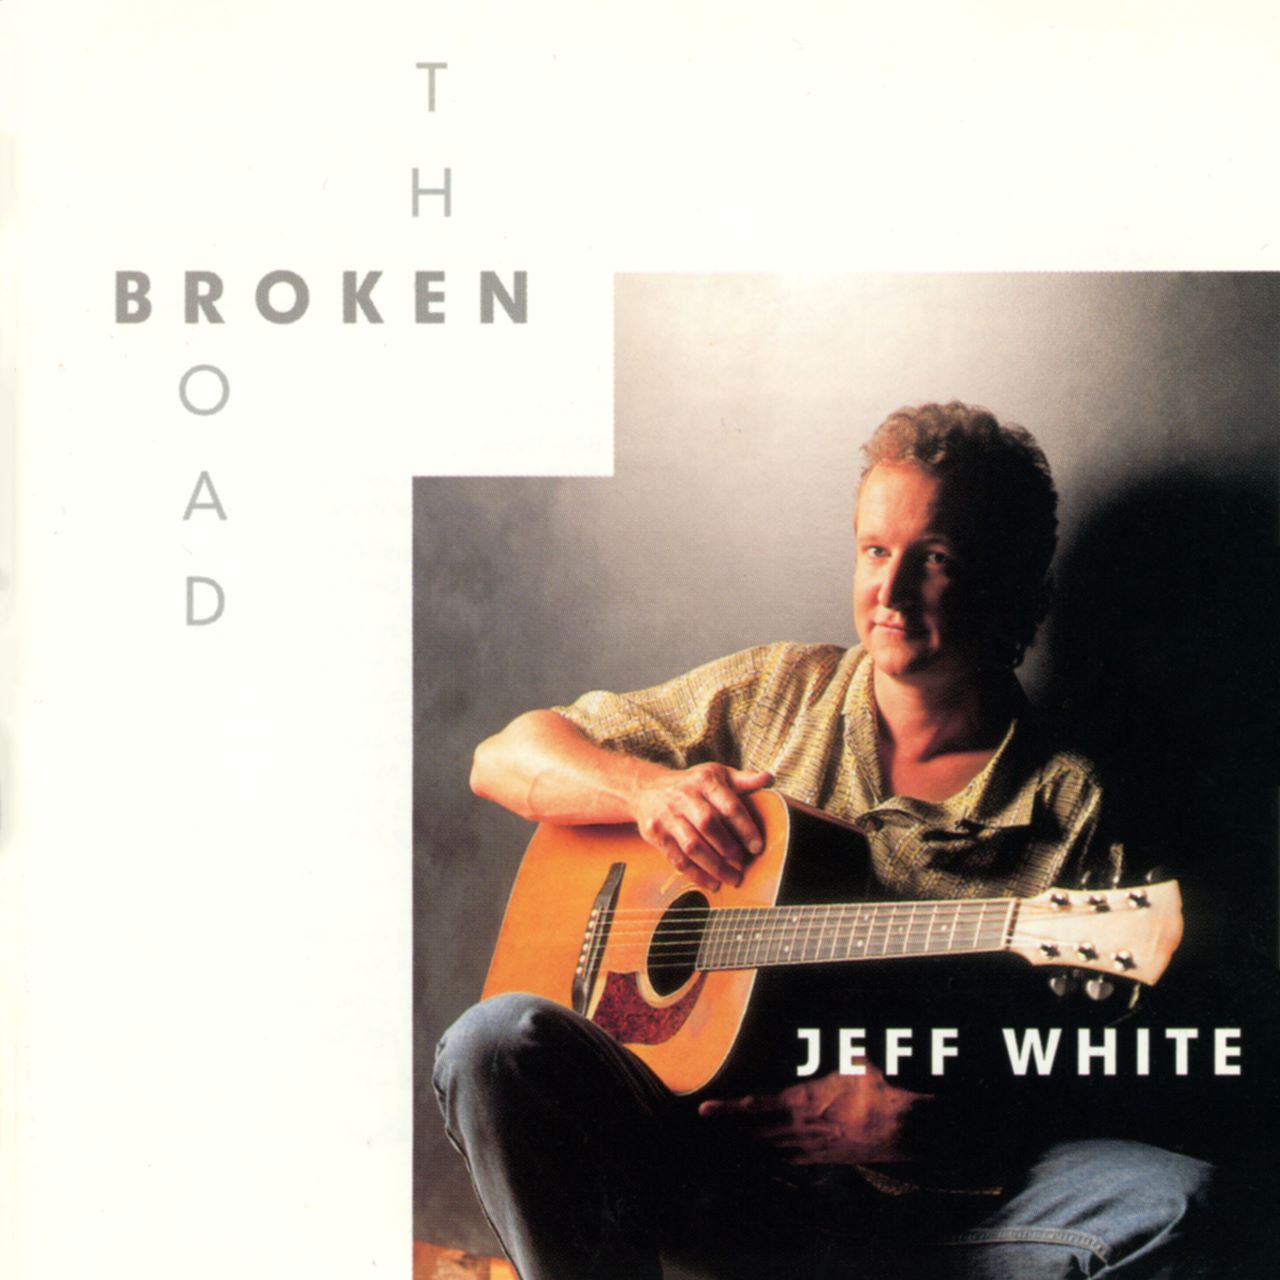 Jeff White - The Broken Road cover album